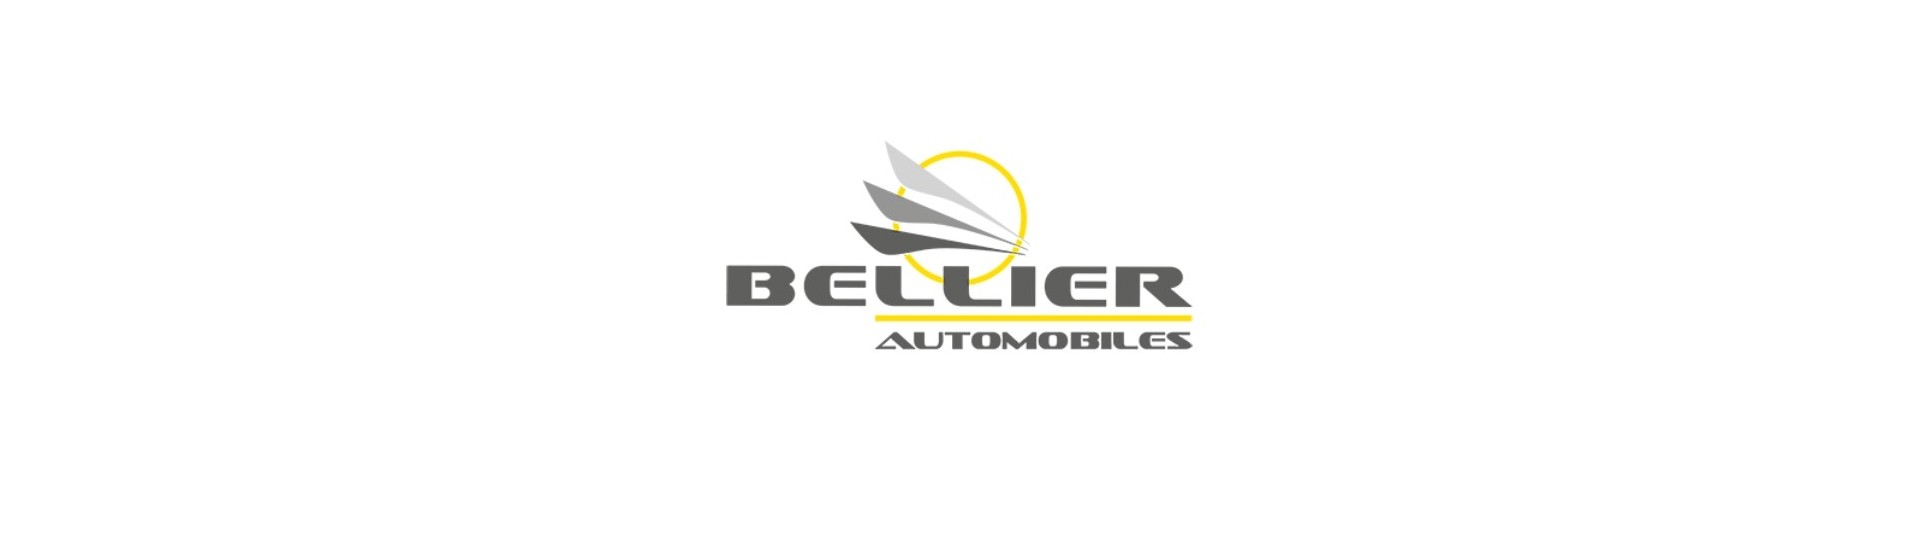 Coș roată de rezervă la cel mai bun preț pentru o mașină fără permis Bellier